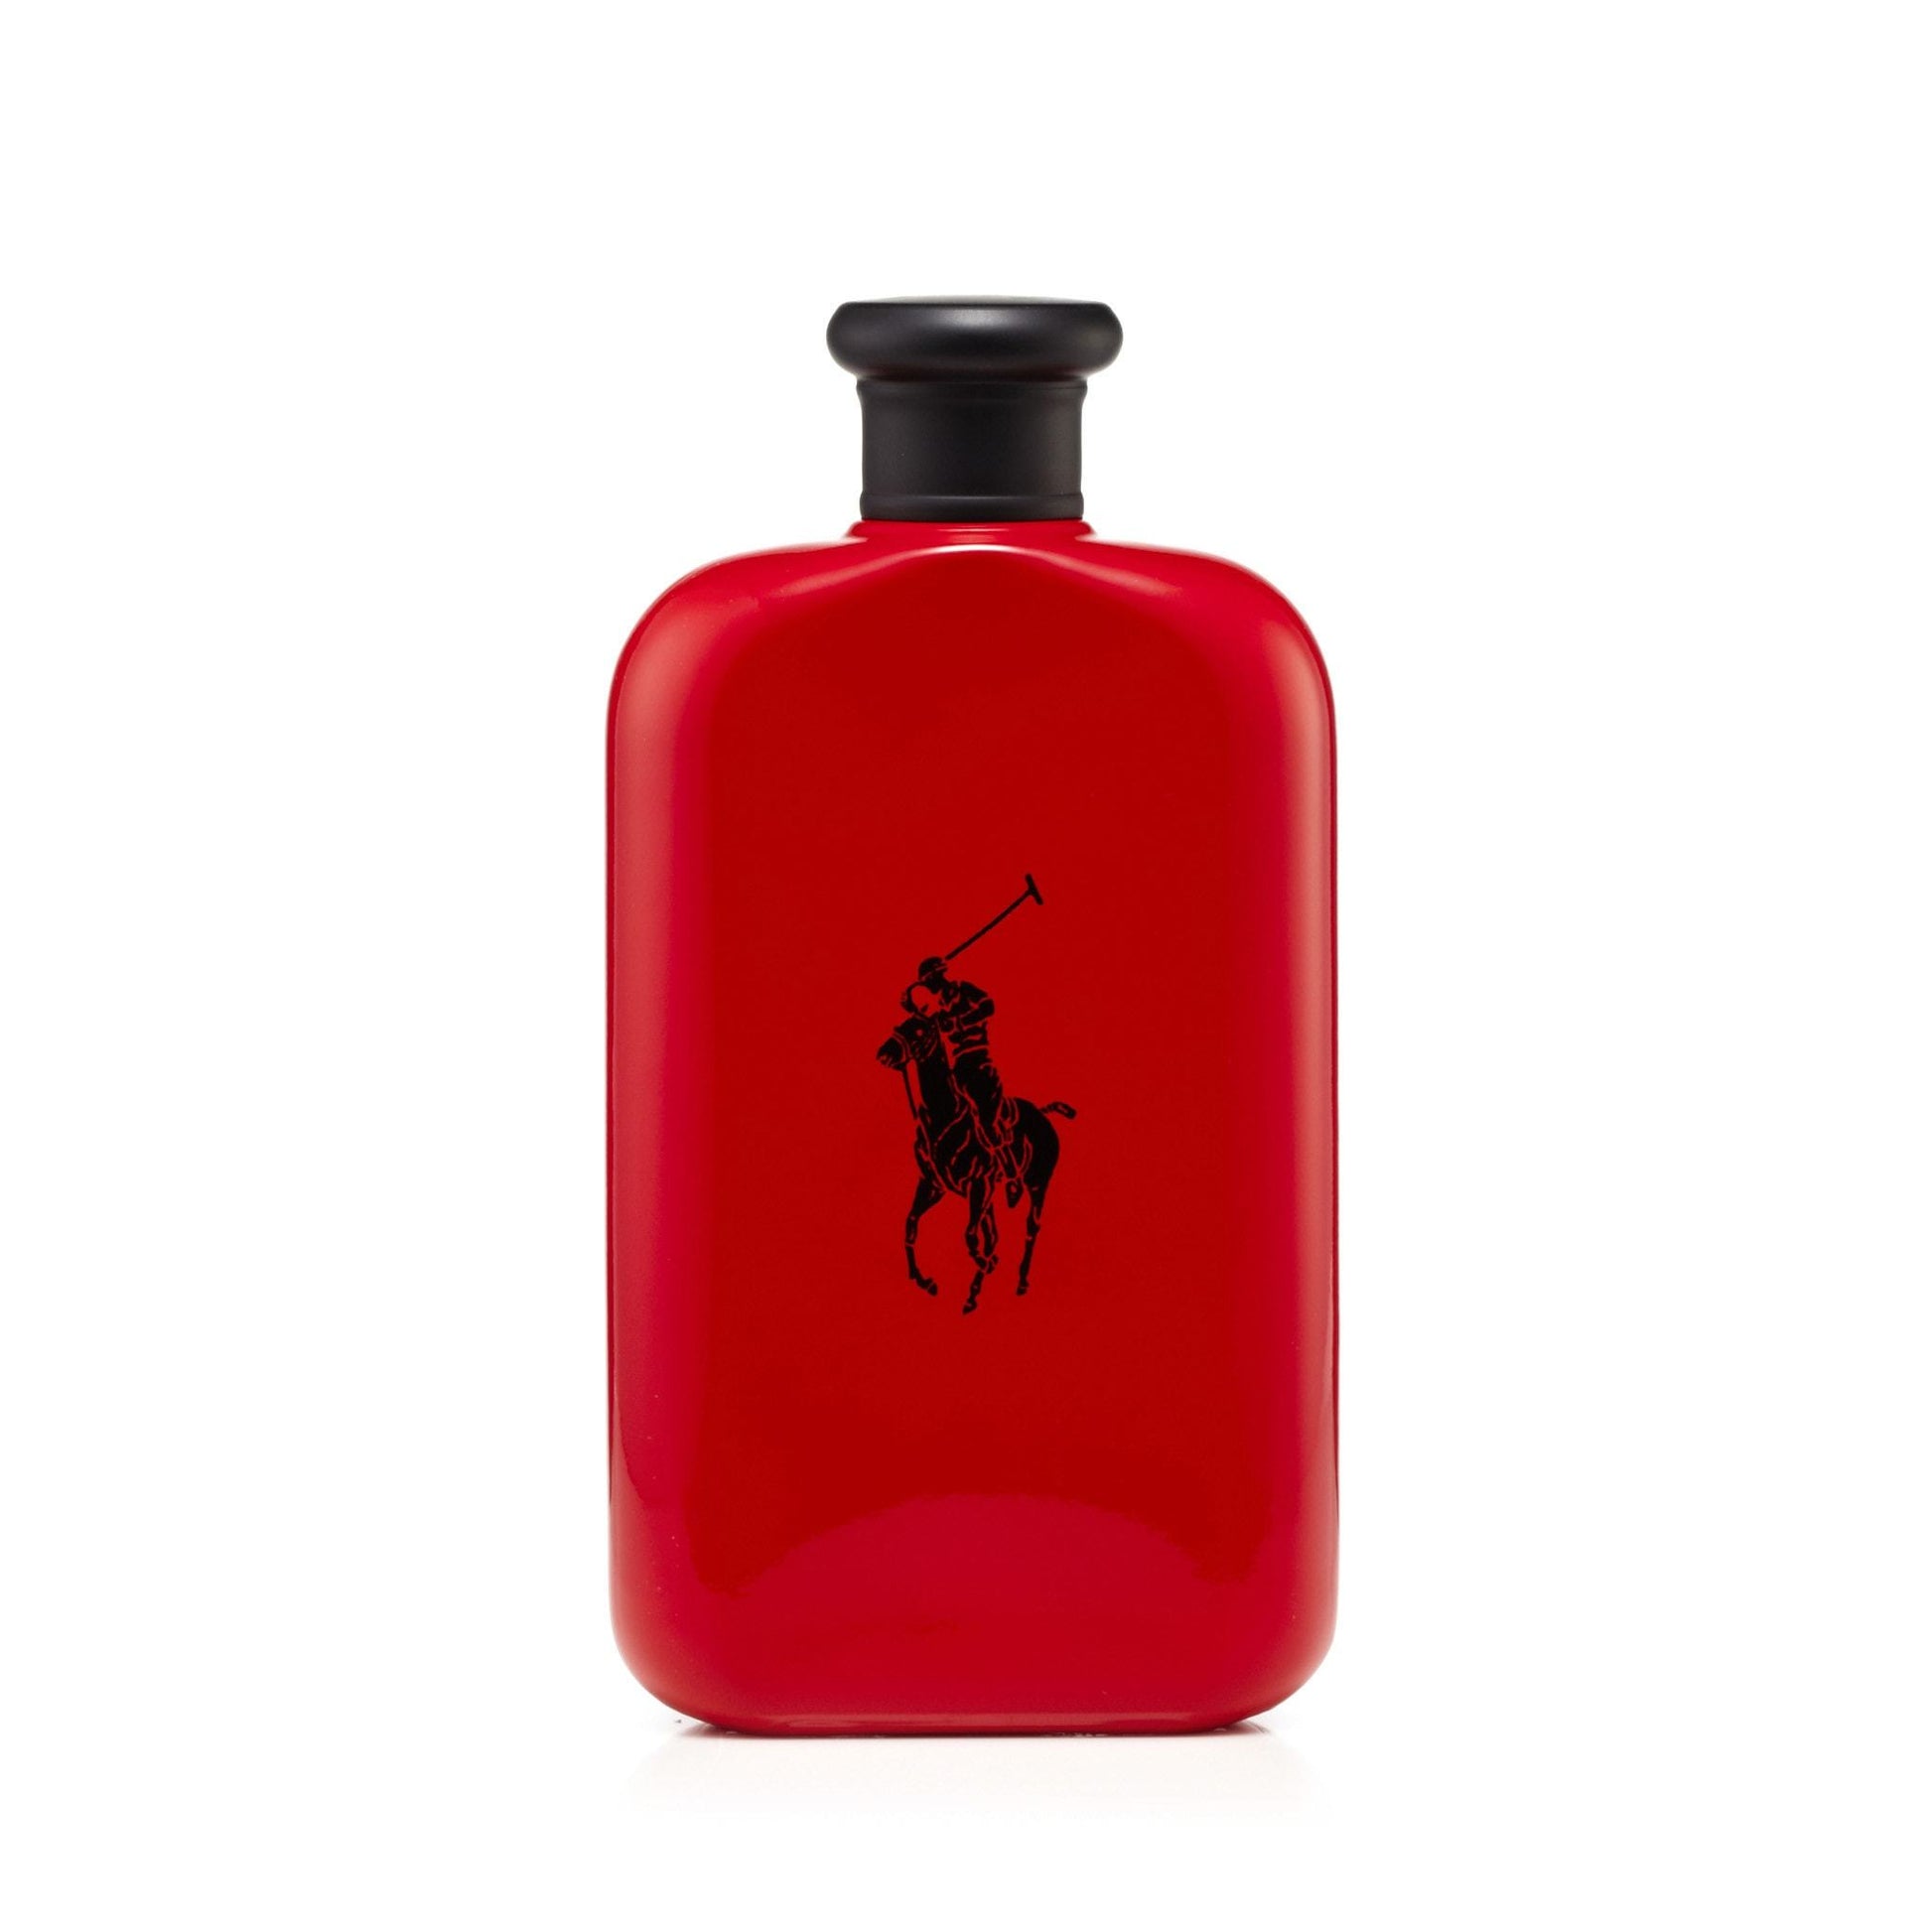 Polo Red Eau de Toilette Spray for Men by Ralph Lauren, Product image 1